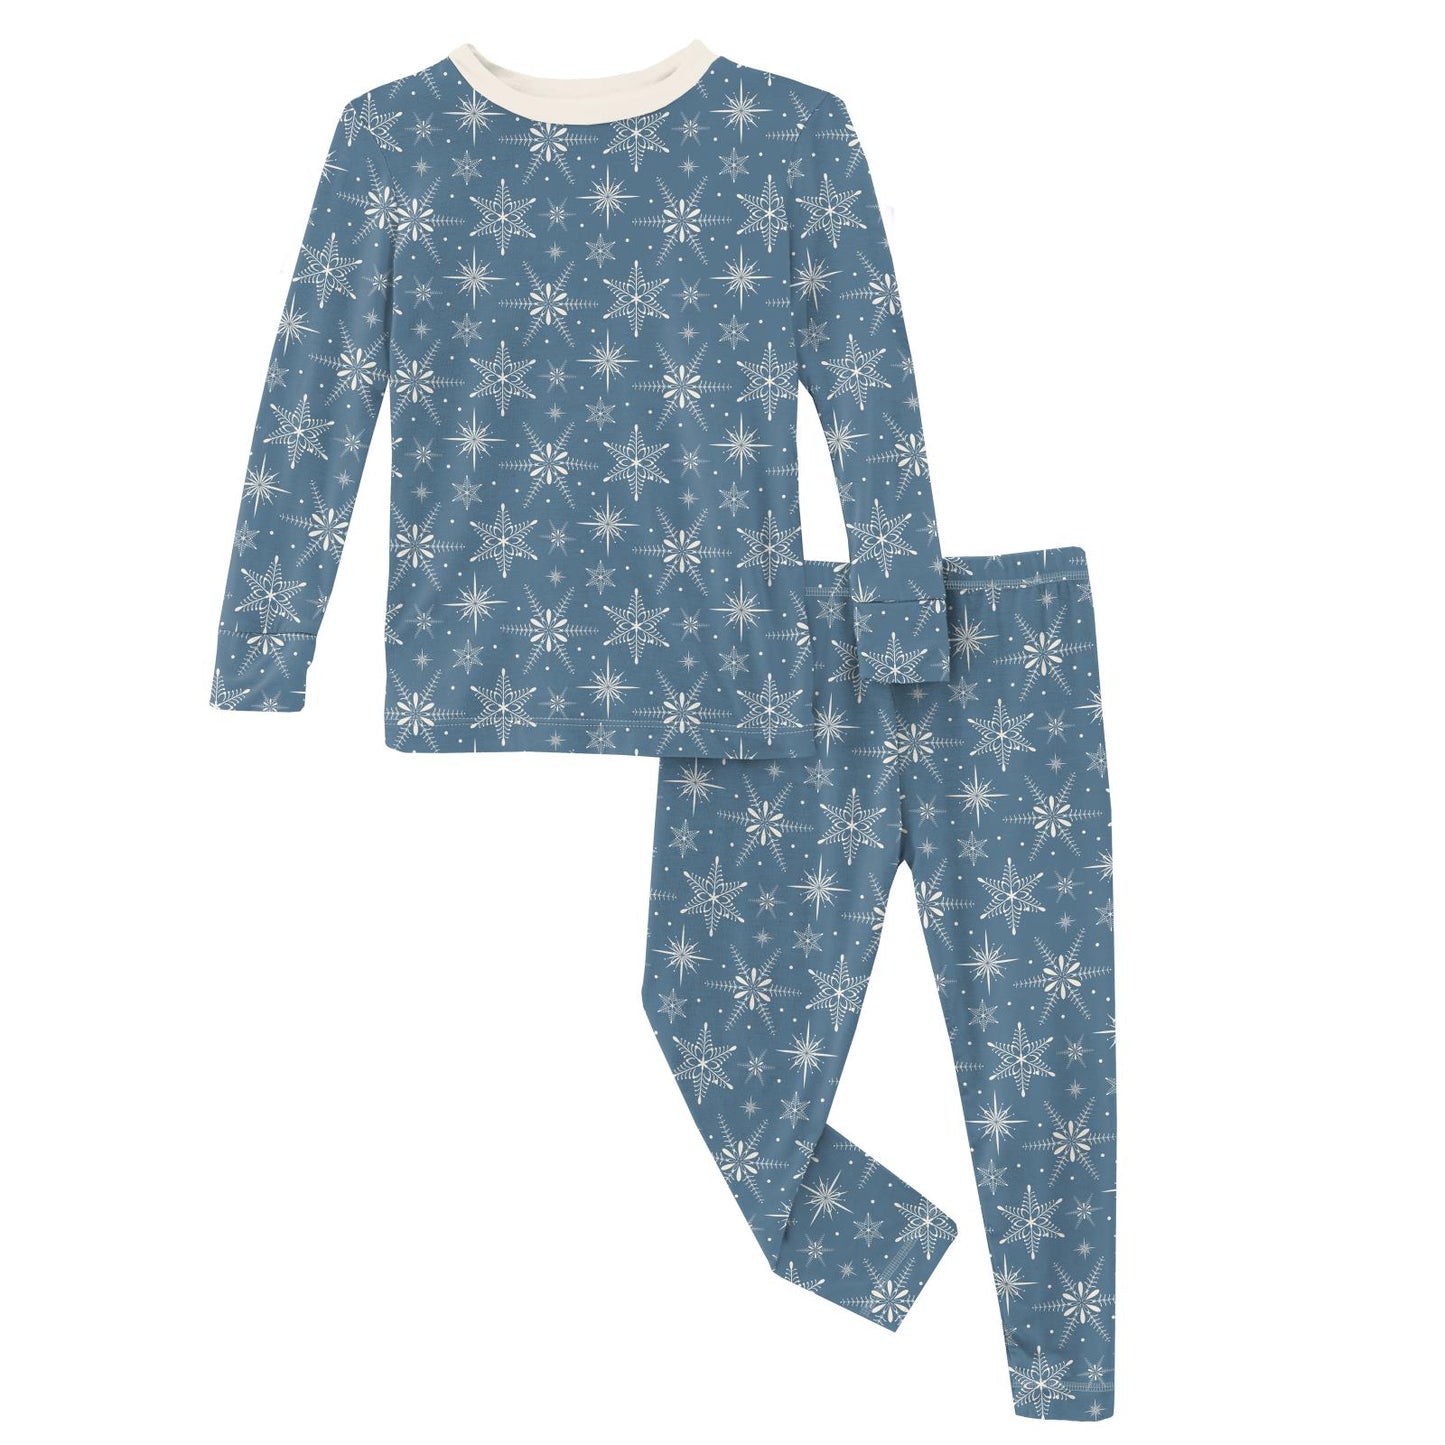 Two Piece Pajama Set - Parisian Blue Snowflakes